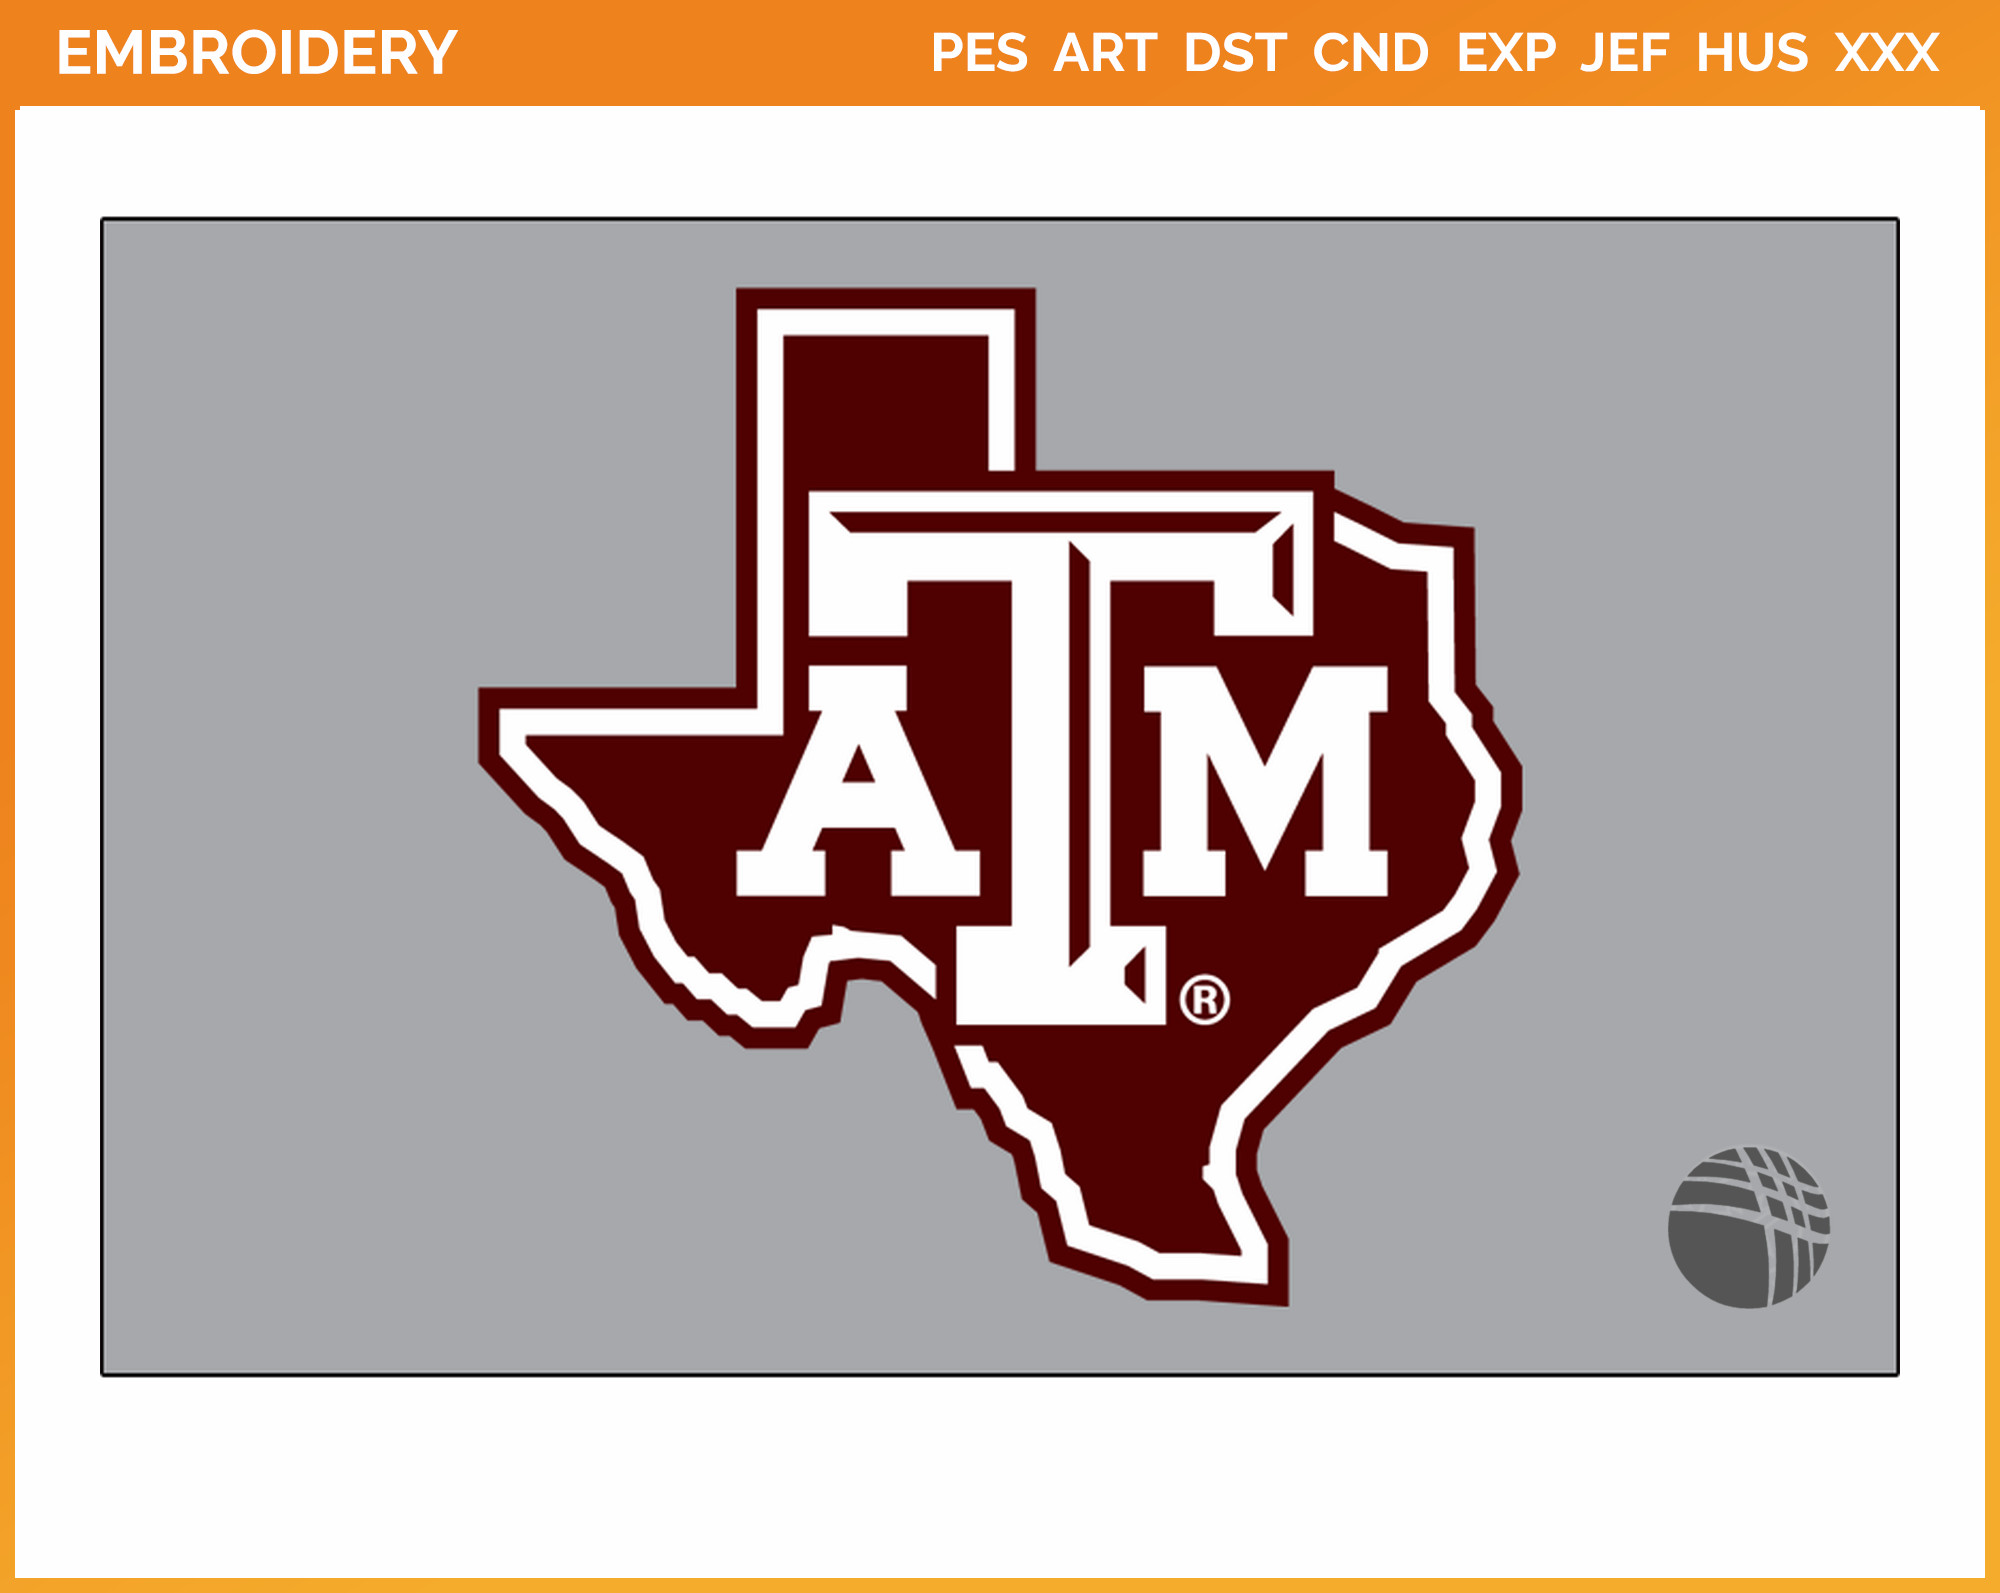 Logo NCAA Texas A&M Aggies Venture Tote Bag